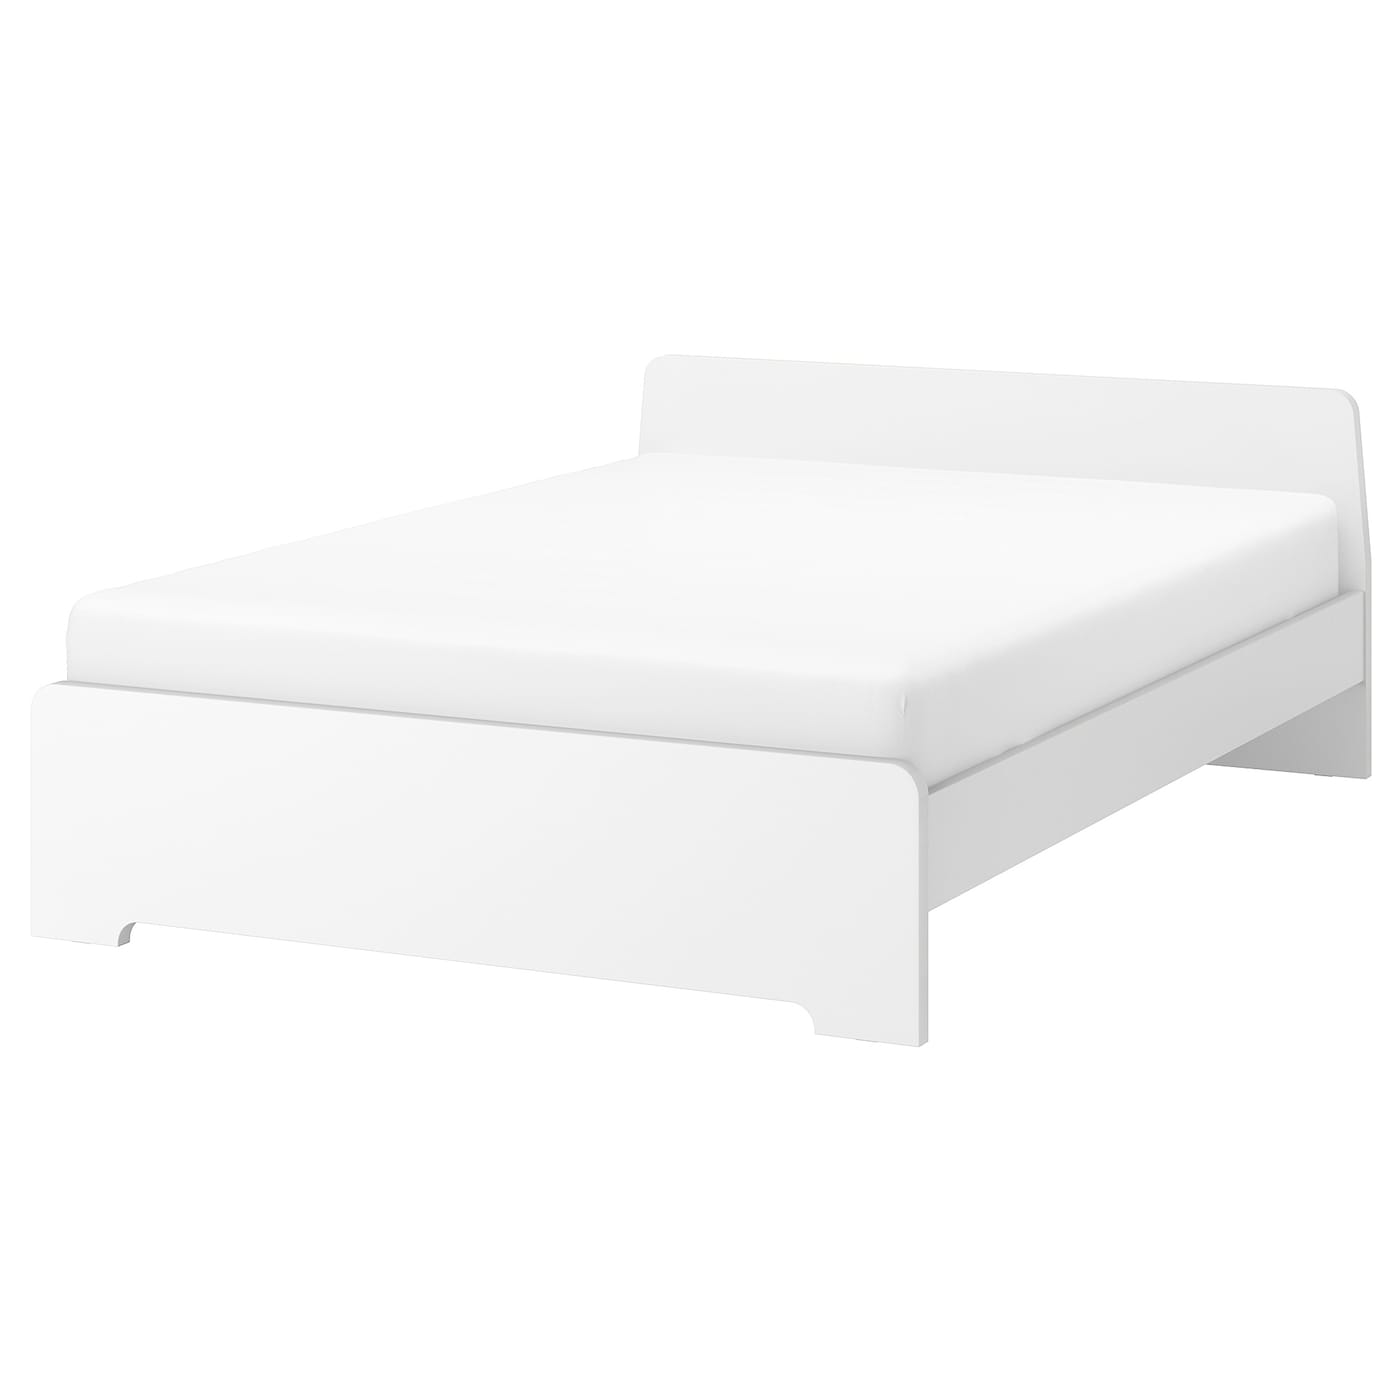 Двуспальная кровать - IKEA ASKVOLL/LURÖY/LUROY, 200х140 см, белый, АСКВОЛЬ/ЛУРОЙ ИКЕА